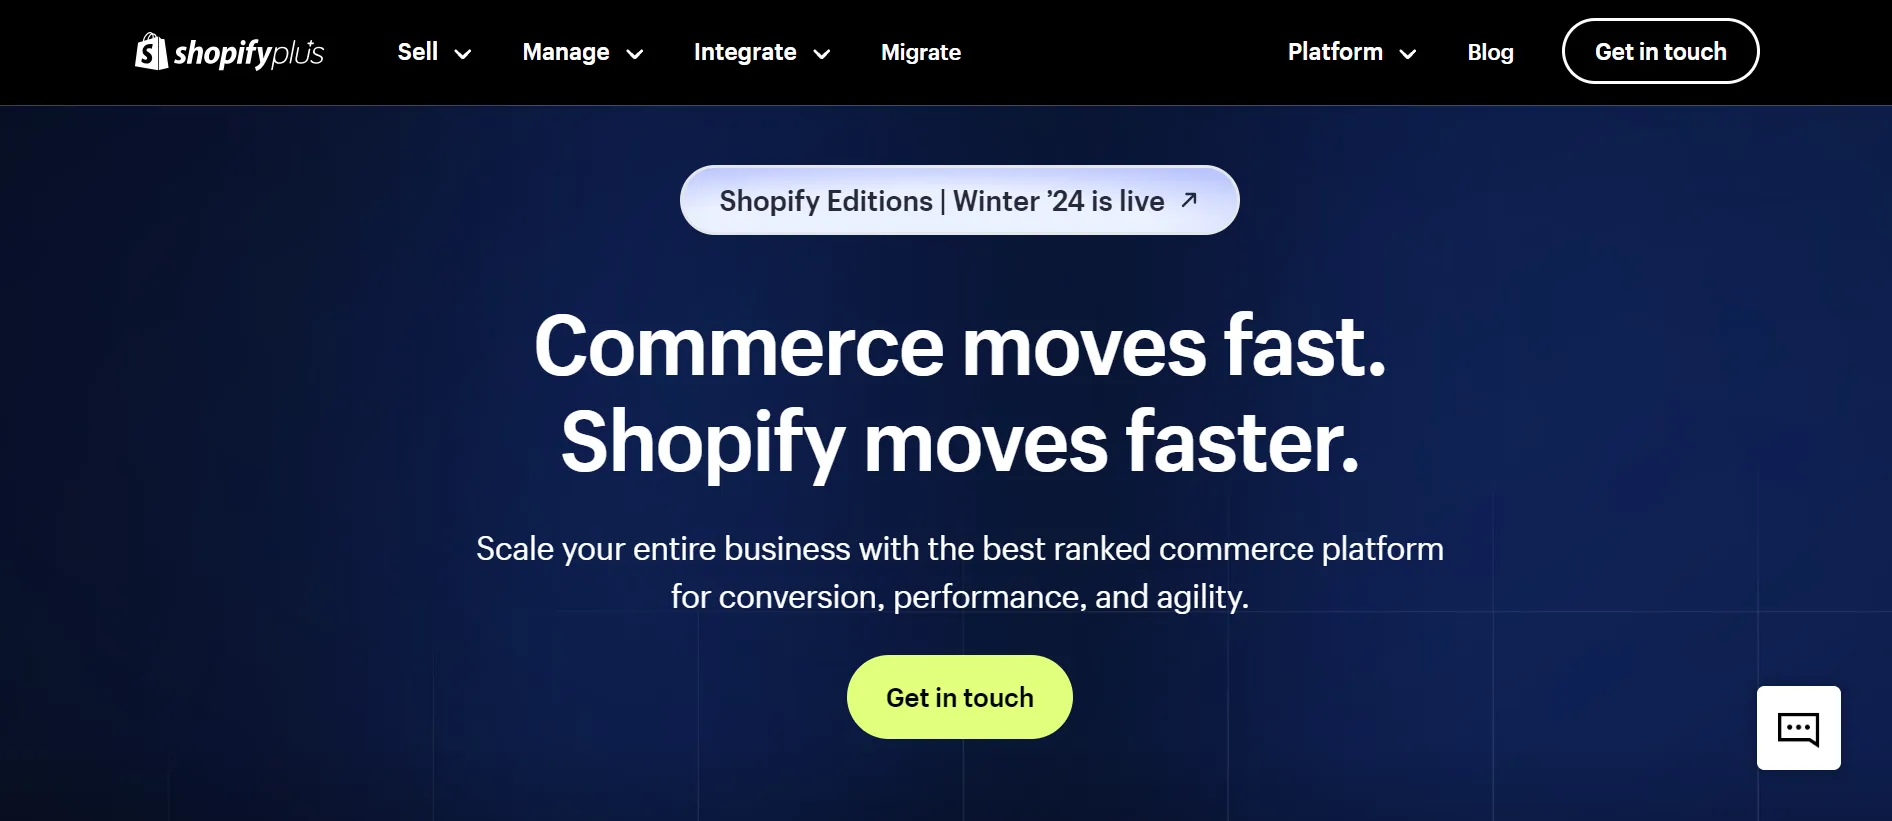 Shopify Plus Partners